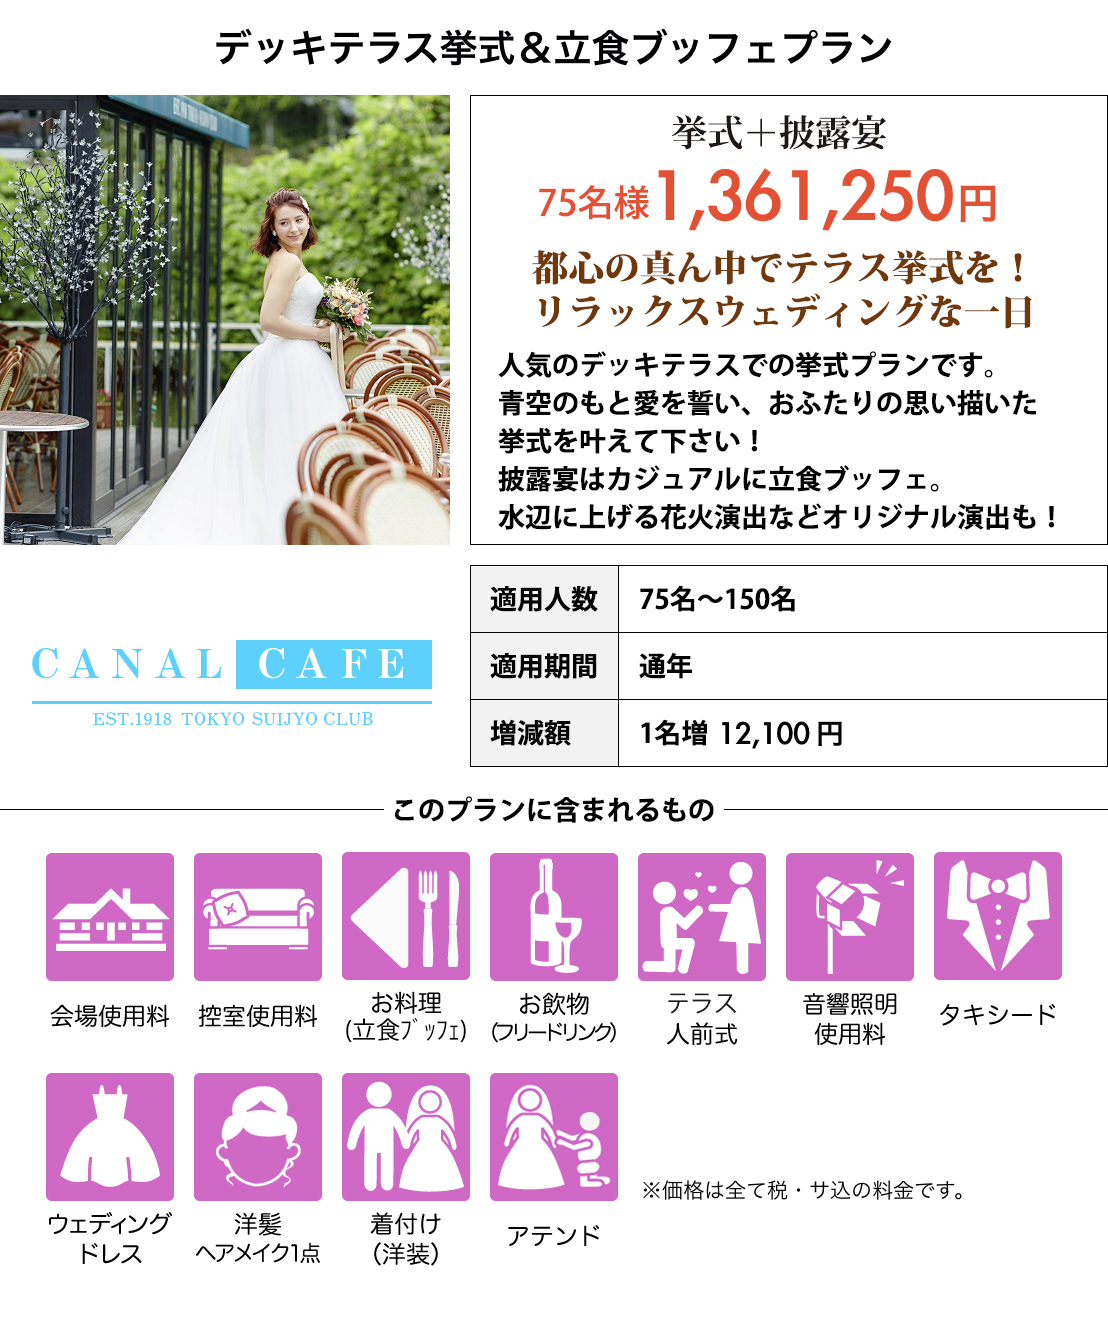 東京水上倶楽部 CANAL CAFE